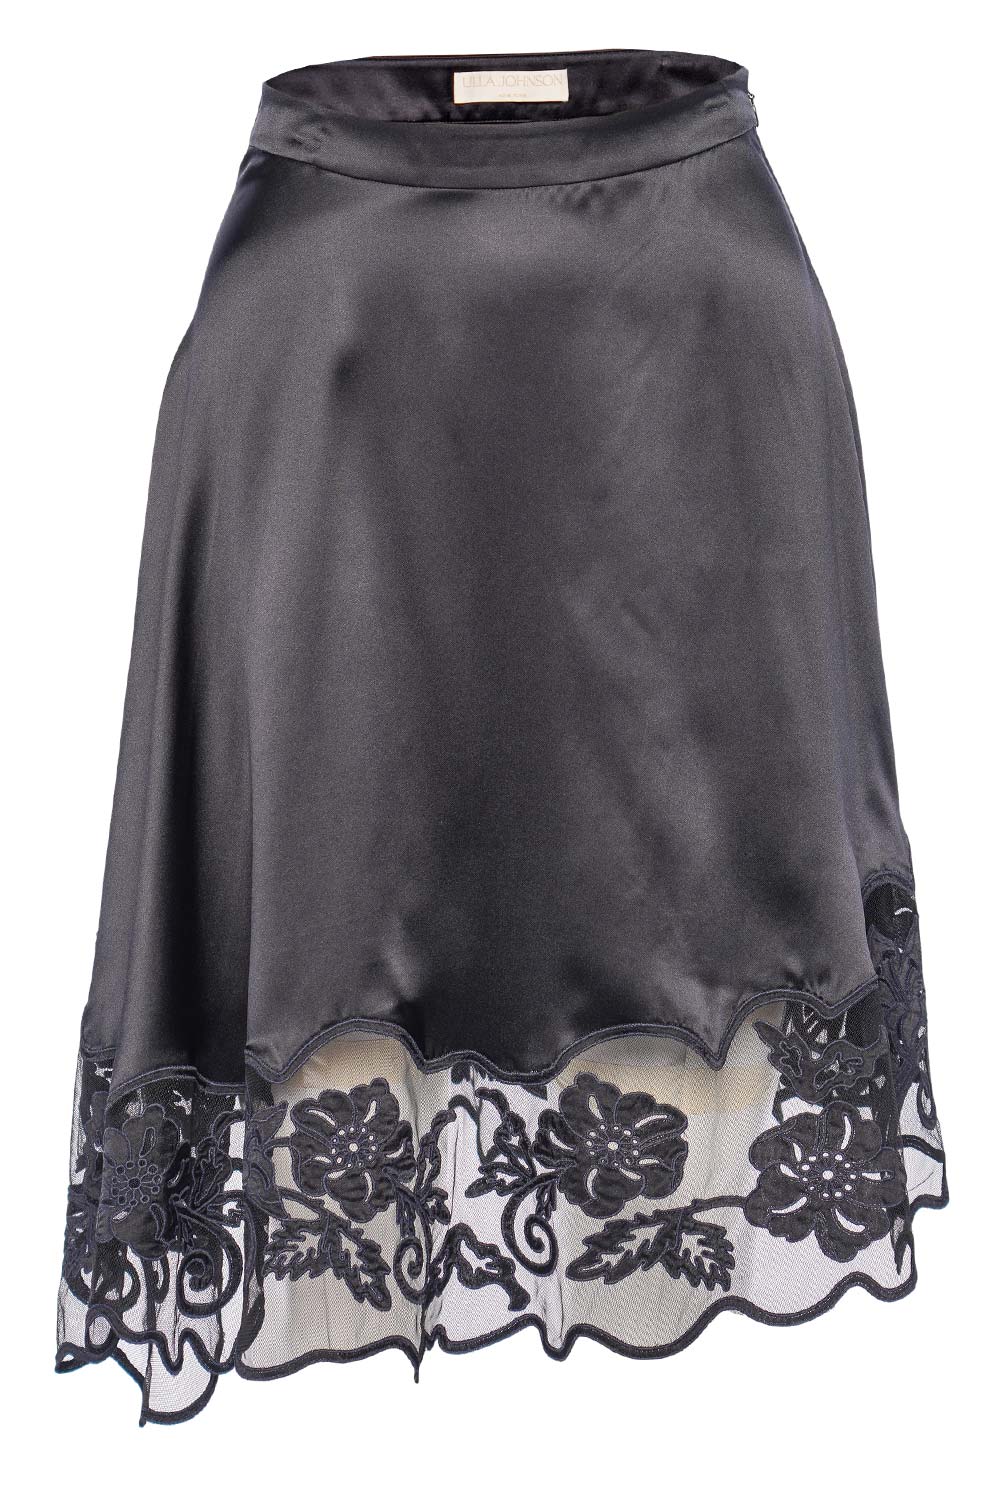 Ulla Johnson Avalon Noir Lace Midi Skirt